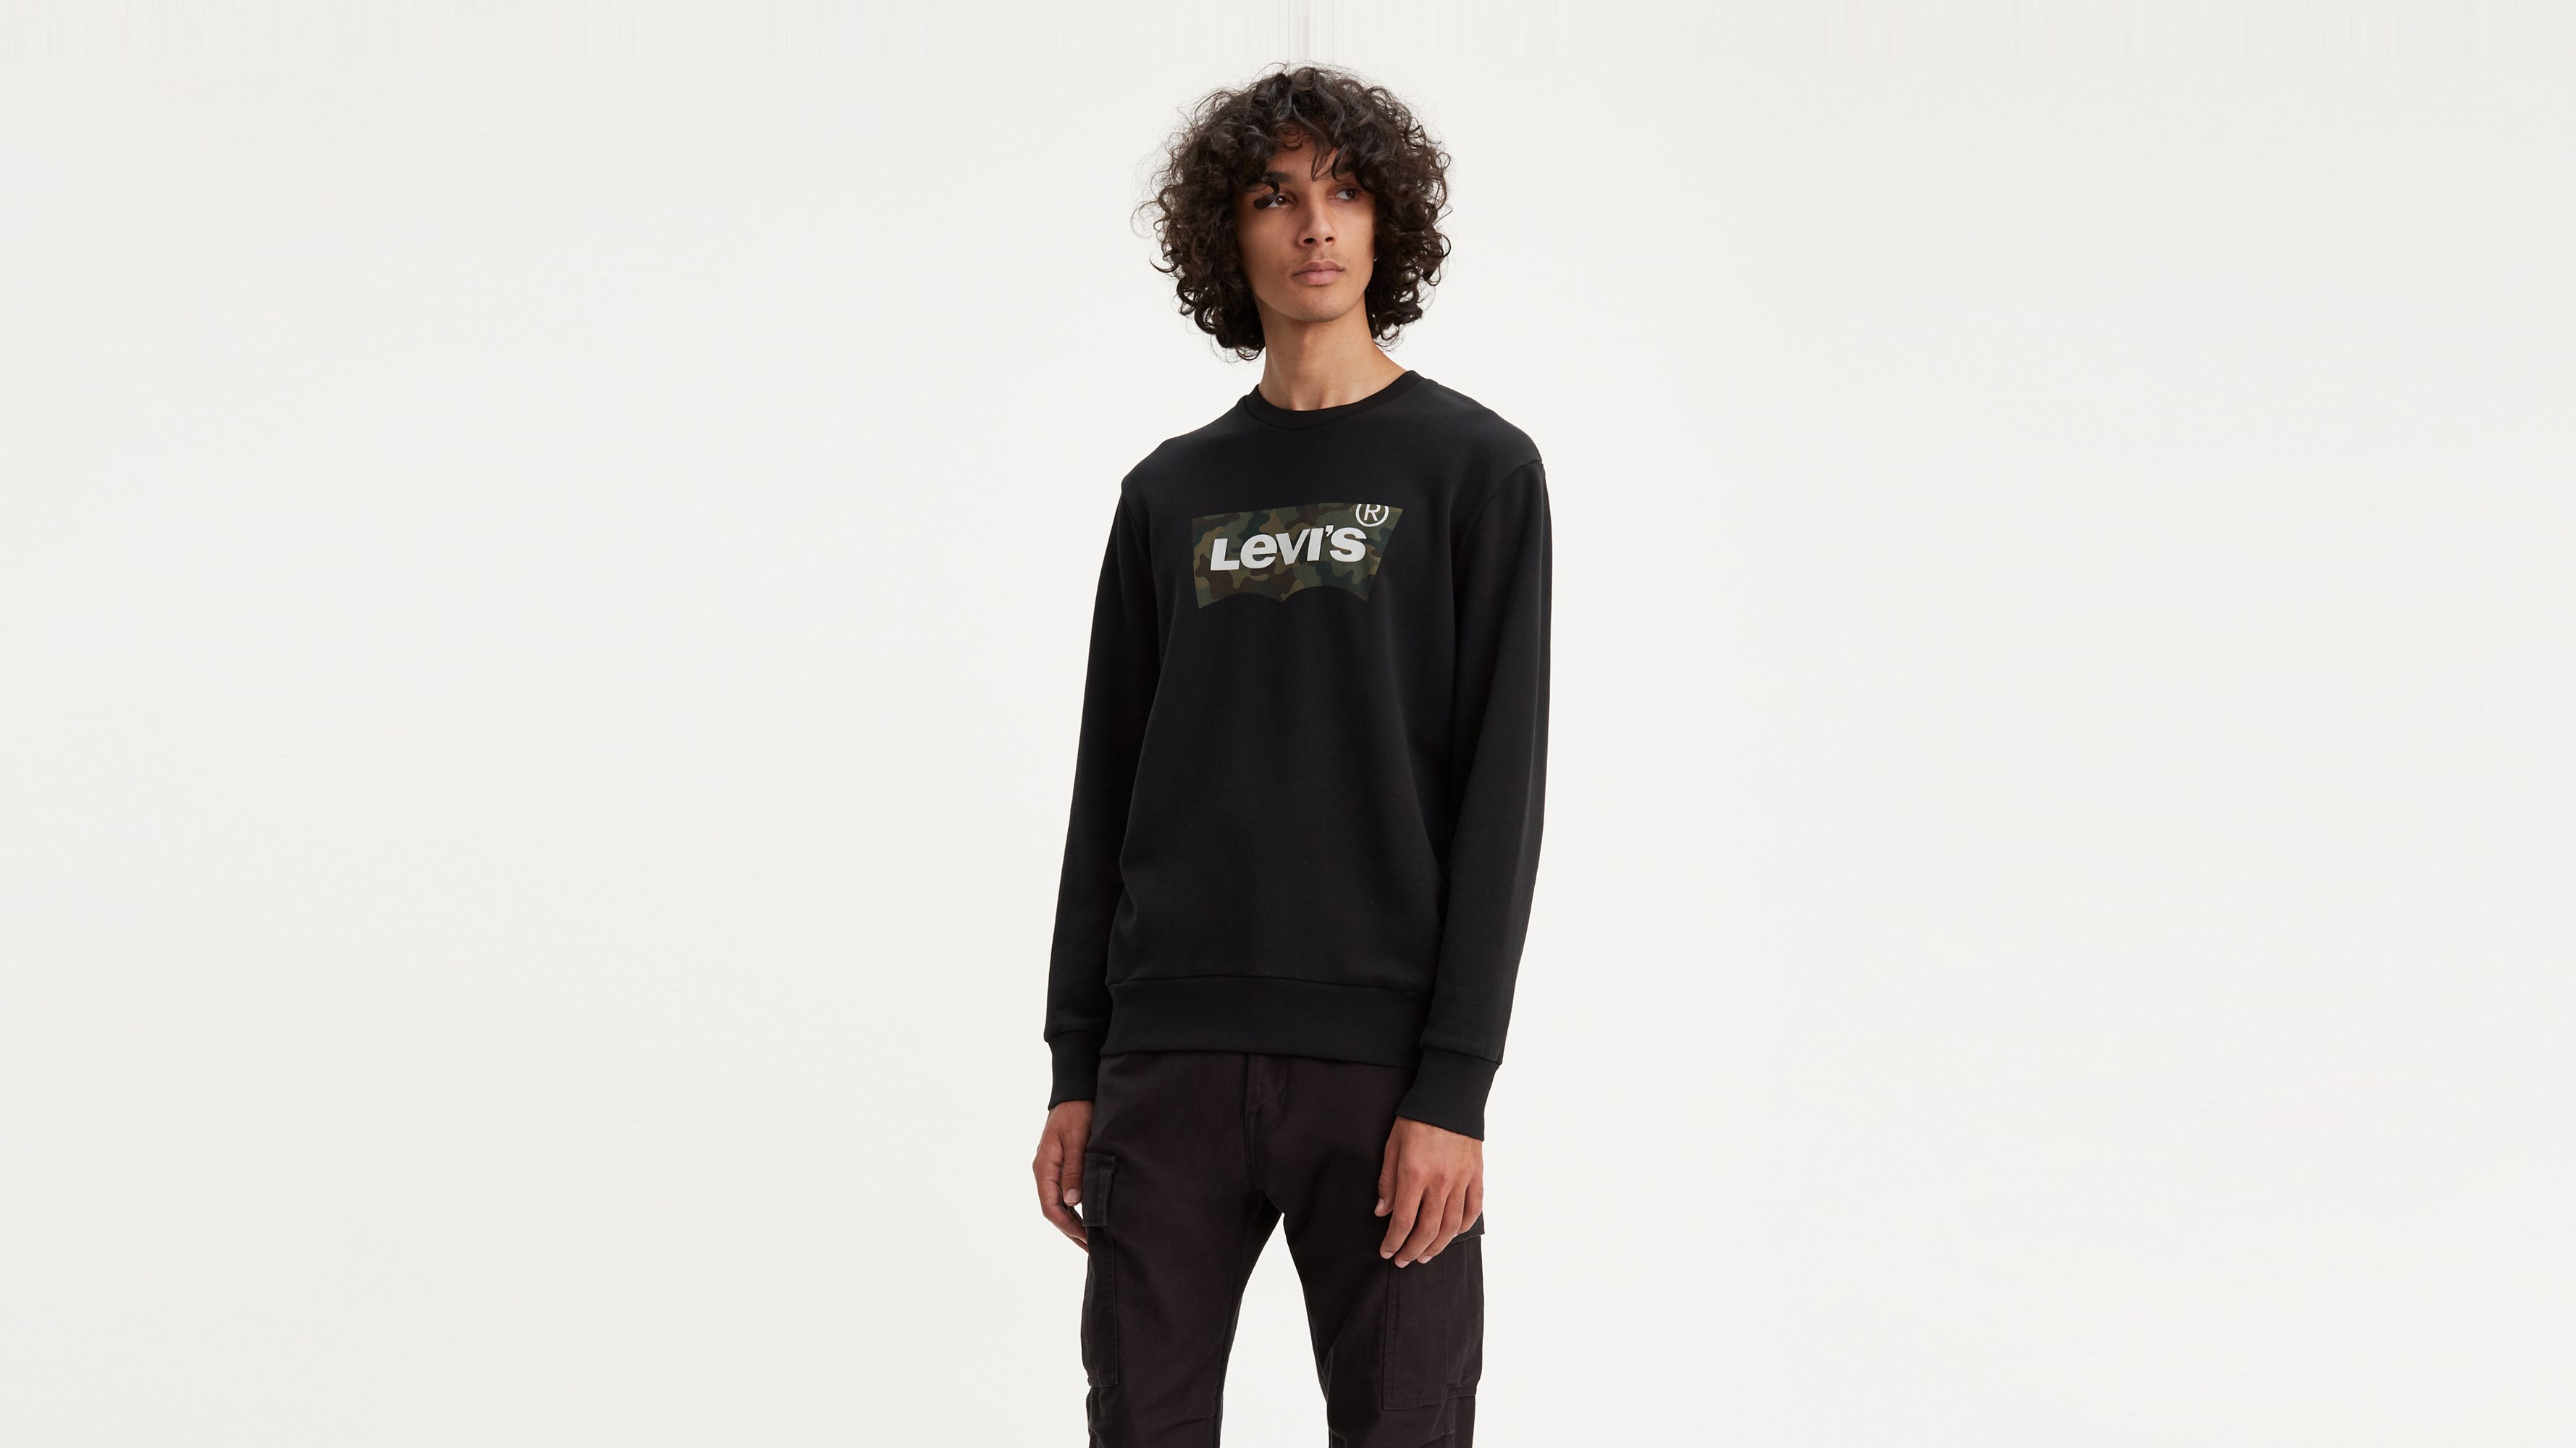 Levi's Graphic Crewneck Sweatshirt in Green for Men